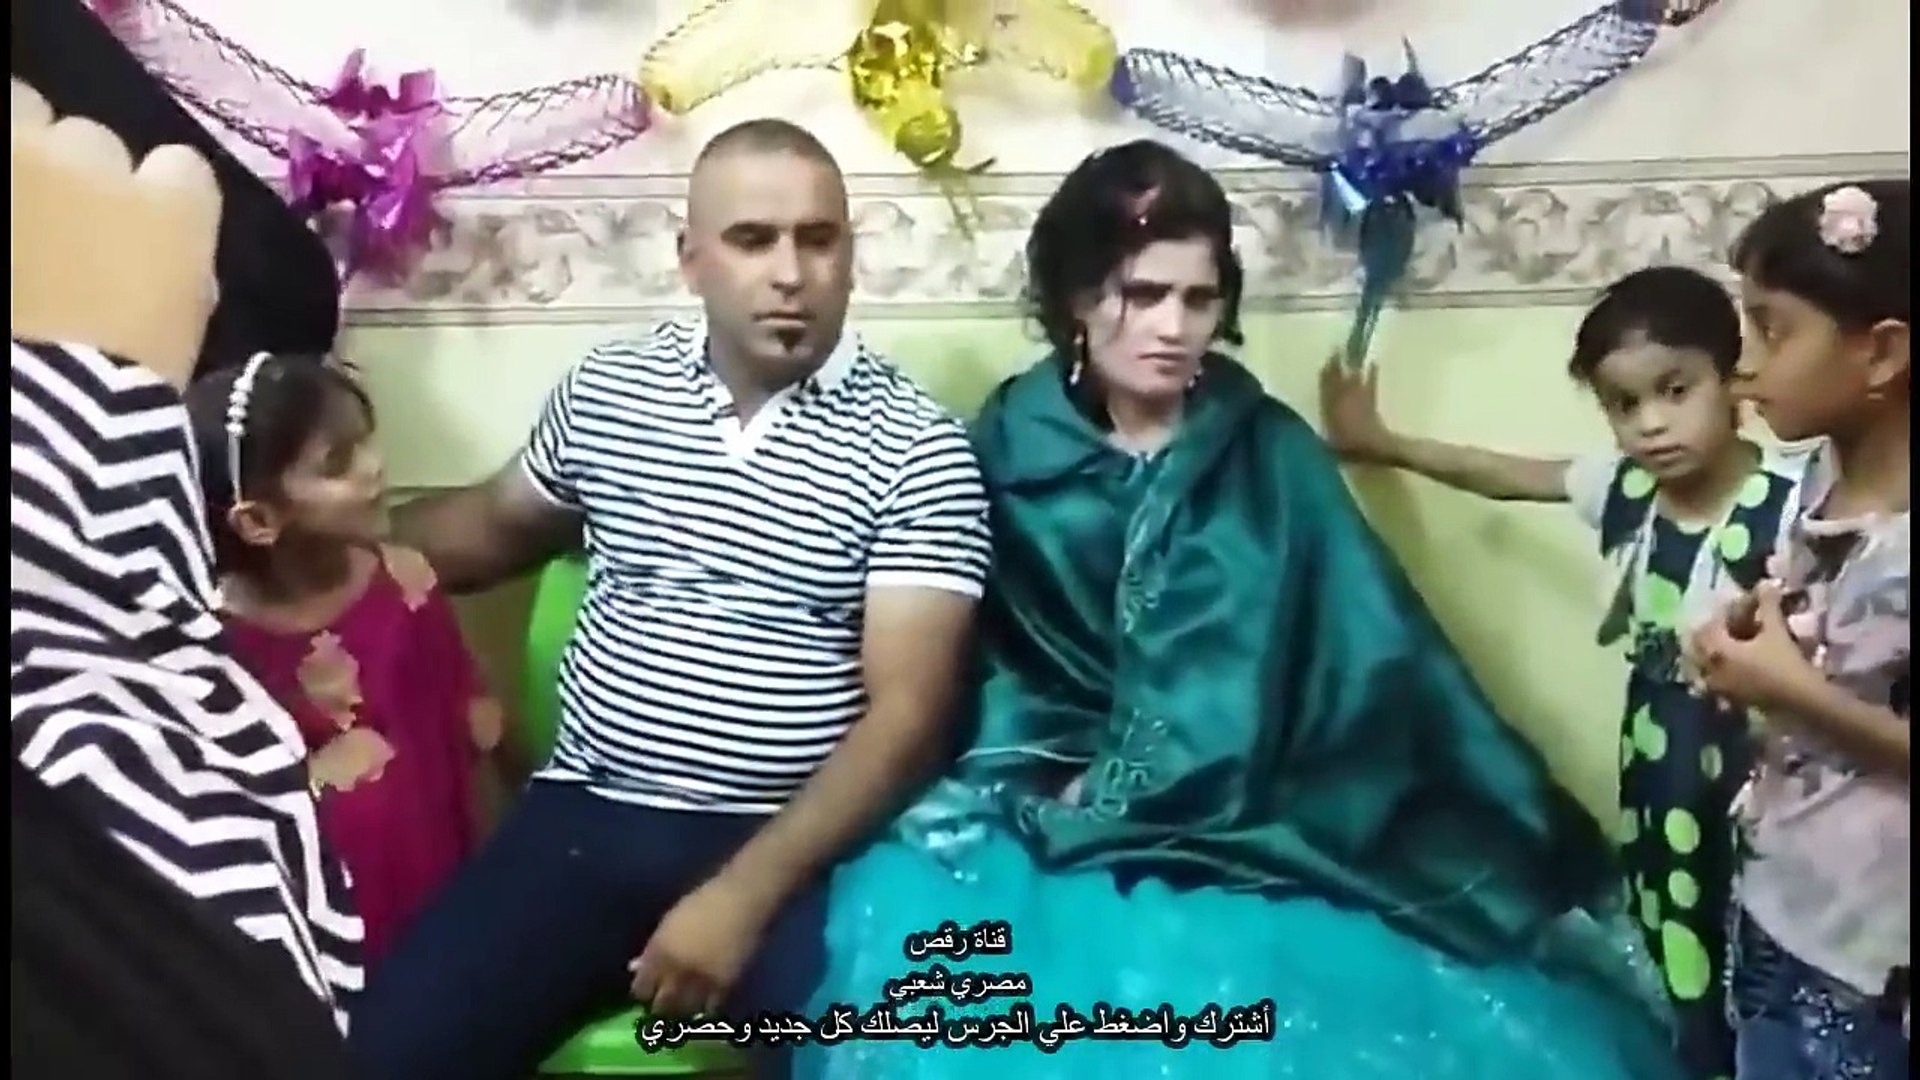 حفل خطوبة وشبكة عراقي ردح روعه - فيديو Dailymotion